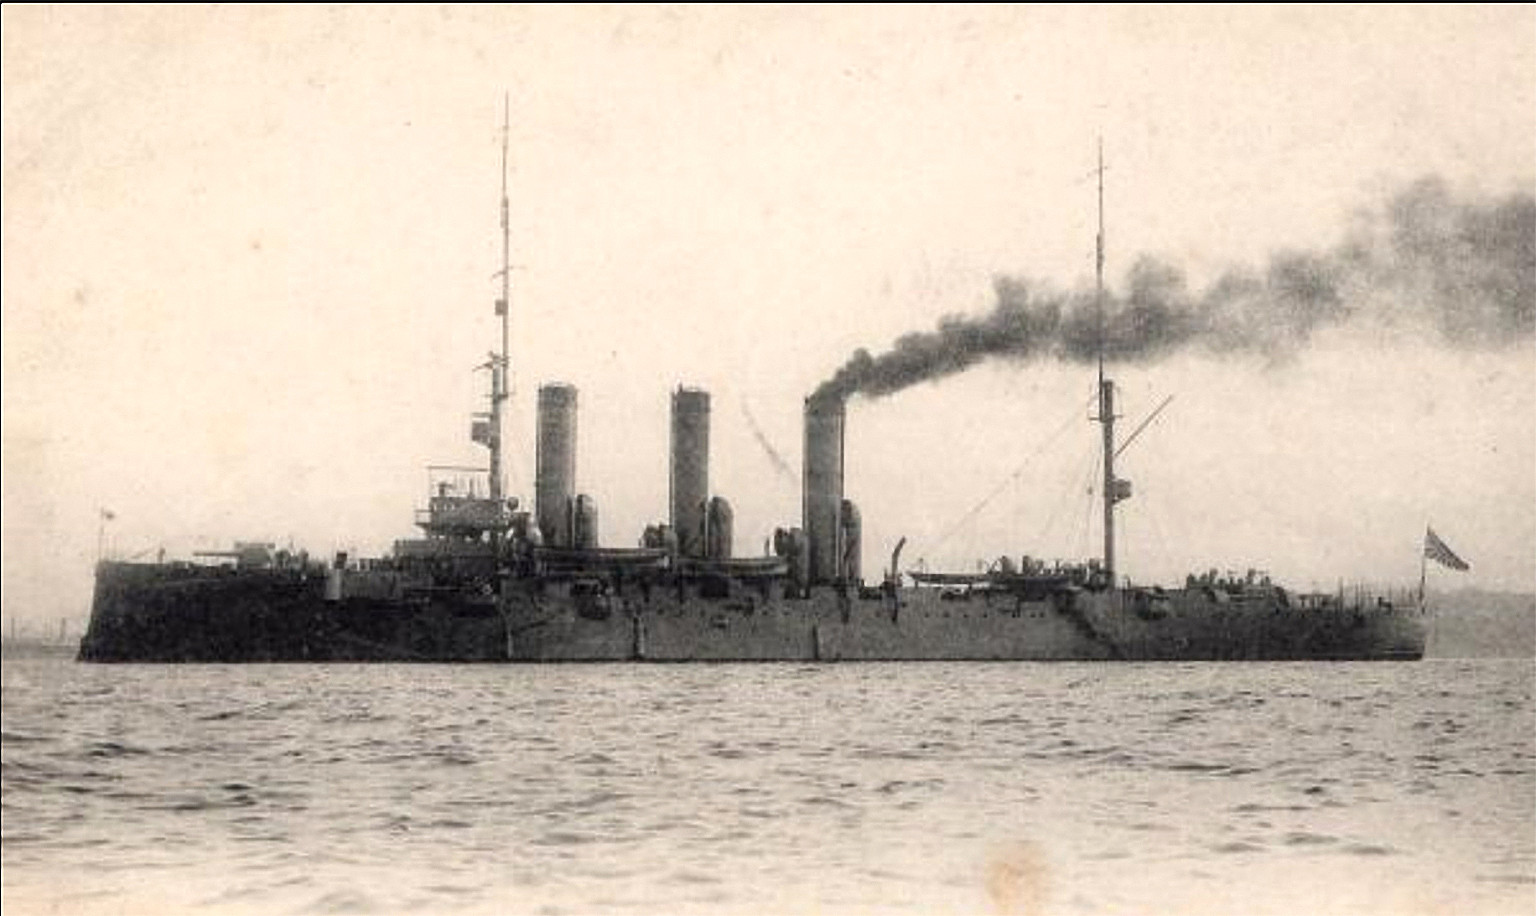 Eks Pałłada. Wcielony do służby po remoncie w 1910 roku (dośc długo to trwało).